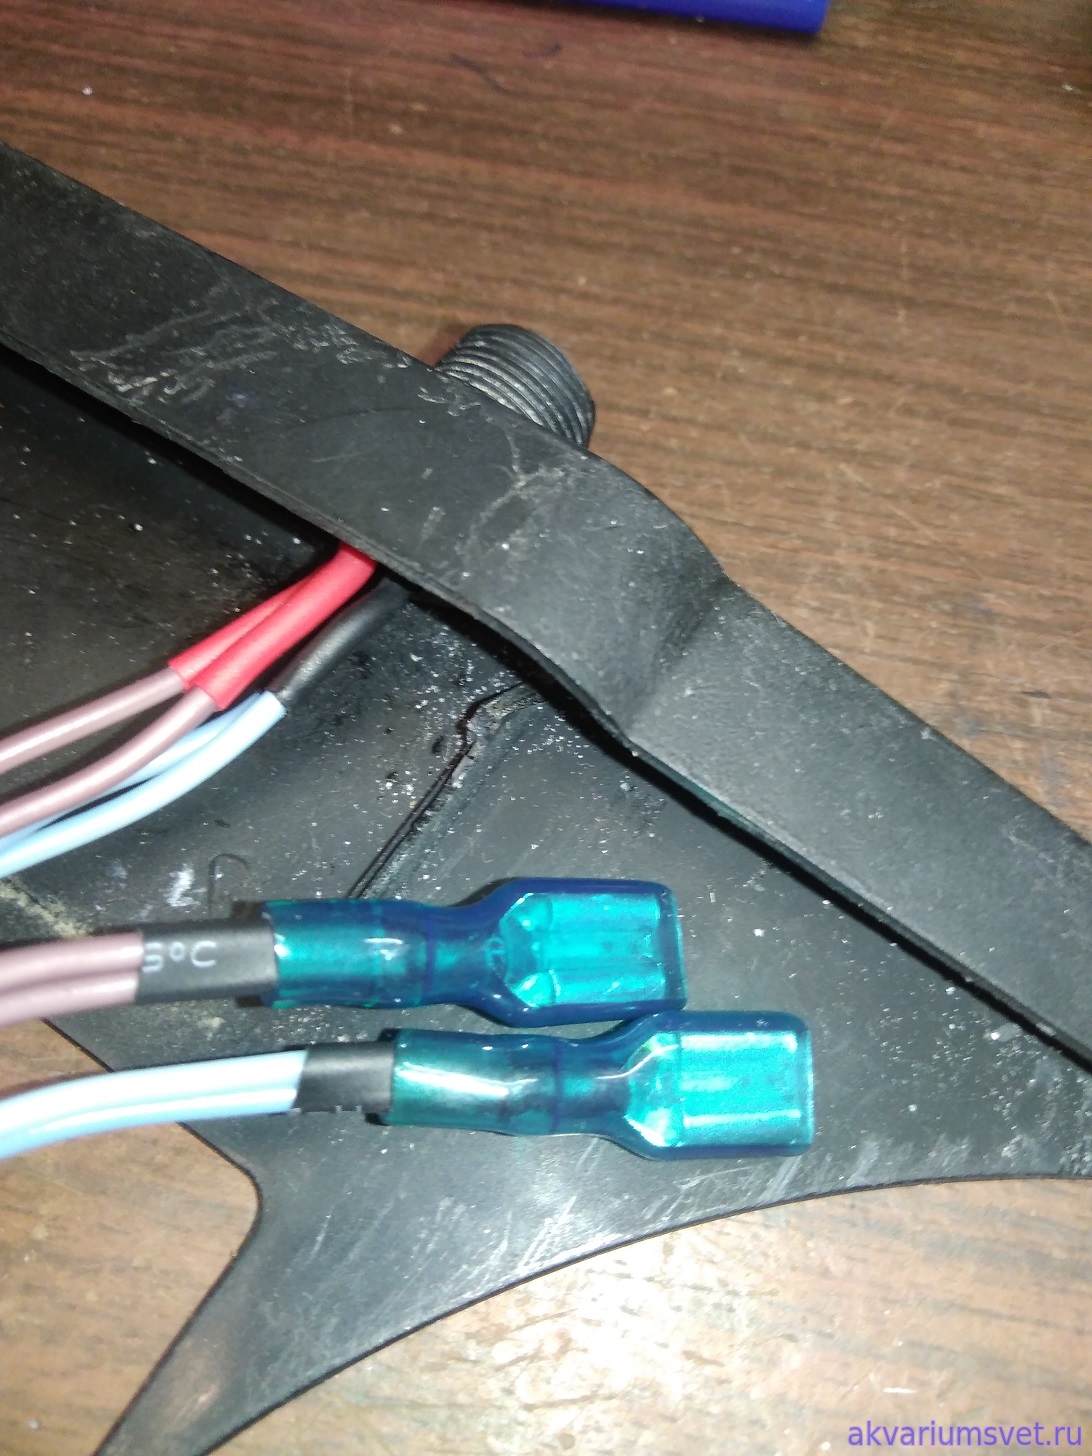 Новые провода и клеммы с силиконовыми изоляторами.